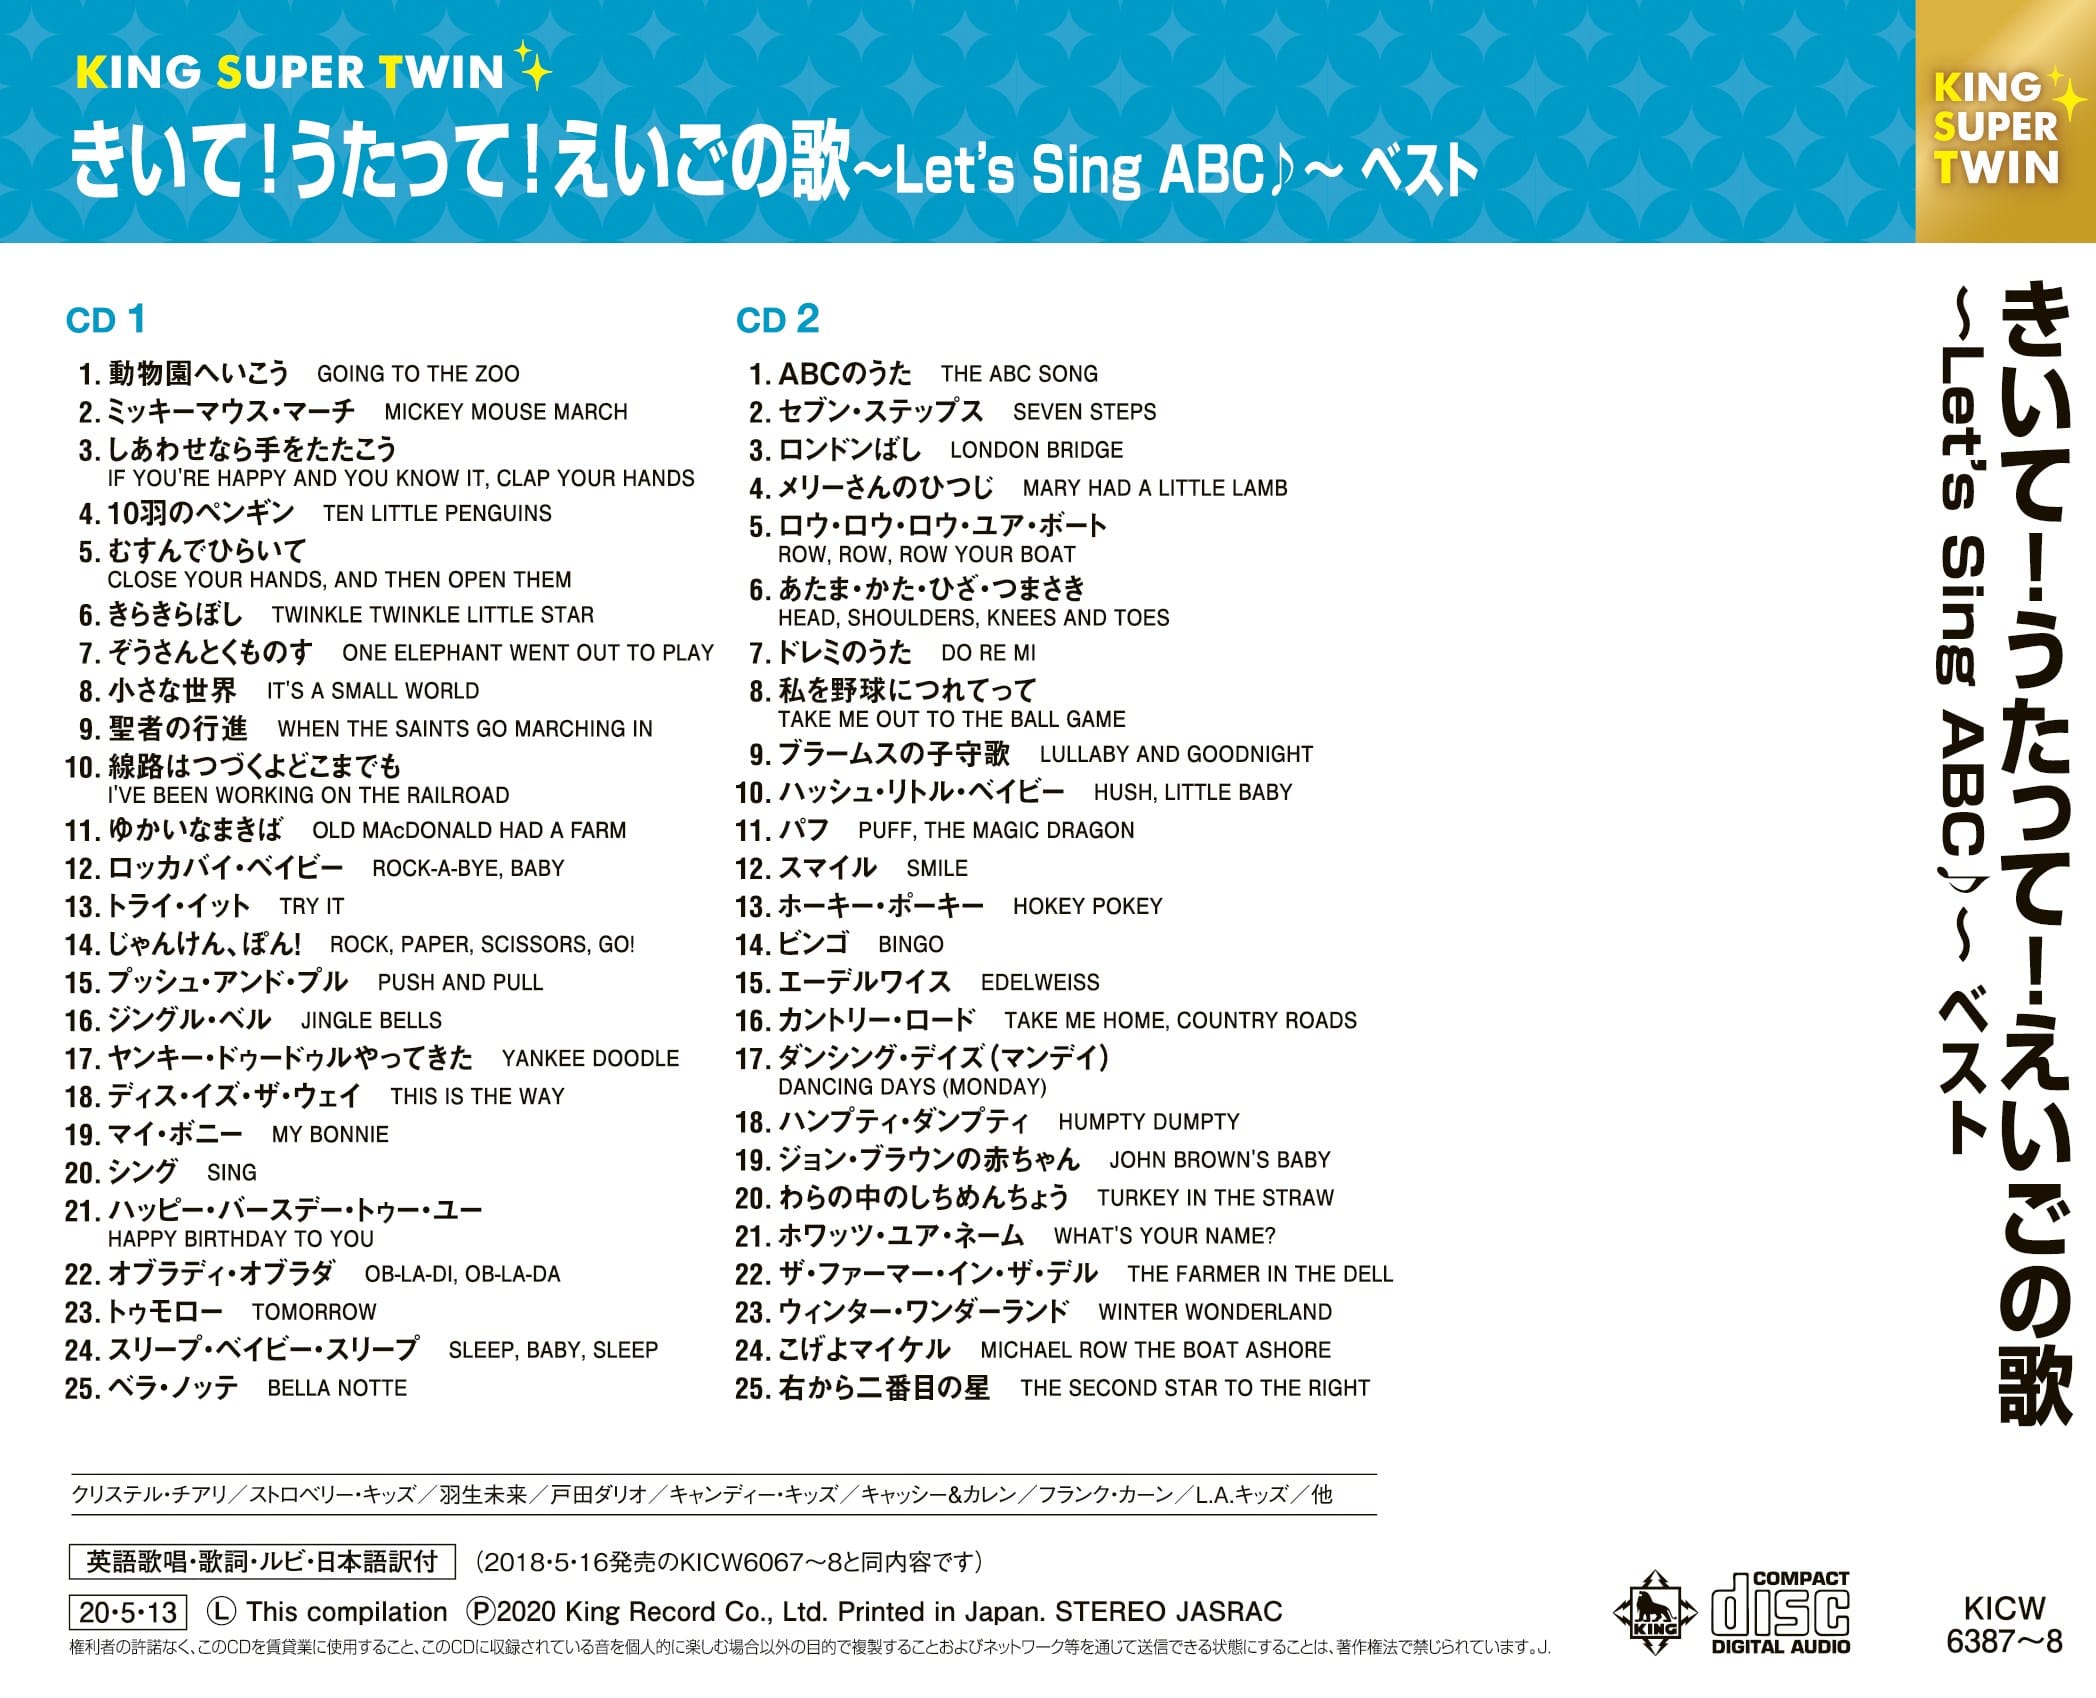 きいて!うたって!えいごの歌〜Let's Sing ABC♪〜 キング・スーパー・ツイン・シリーズ 2020